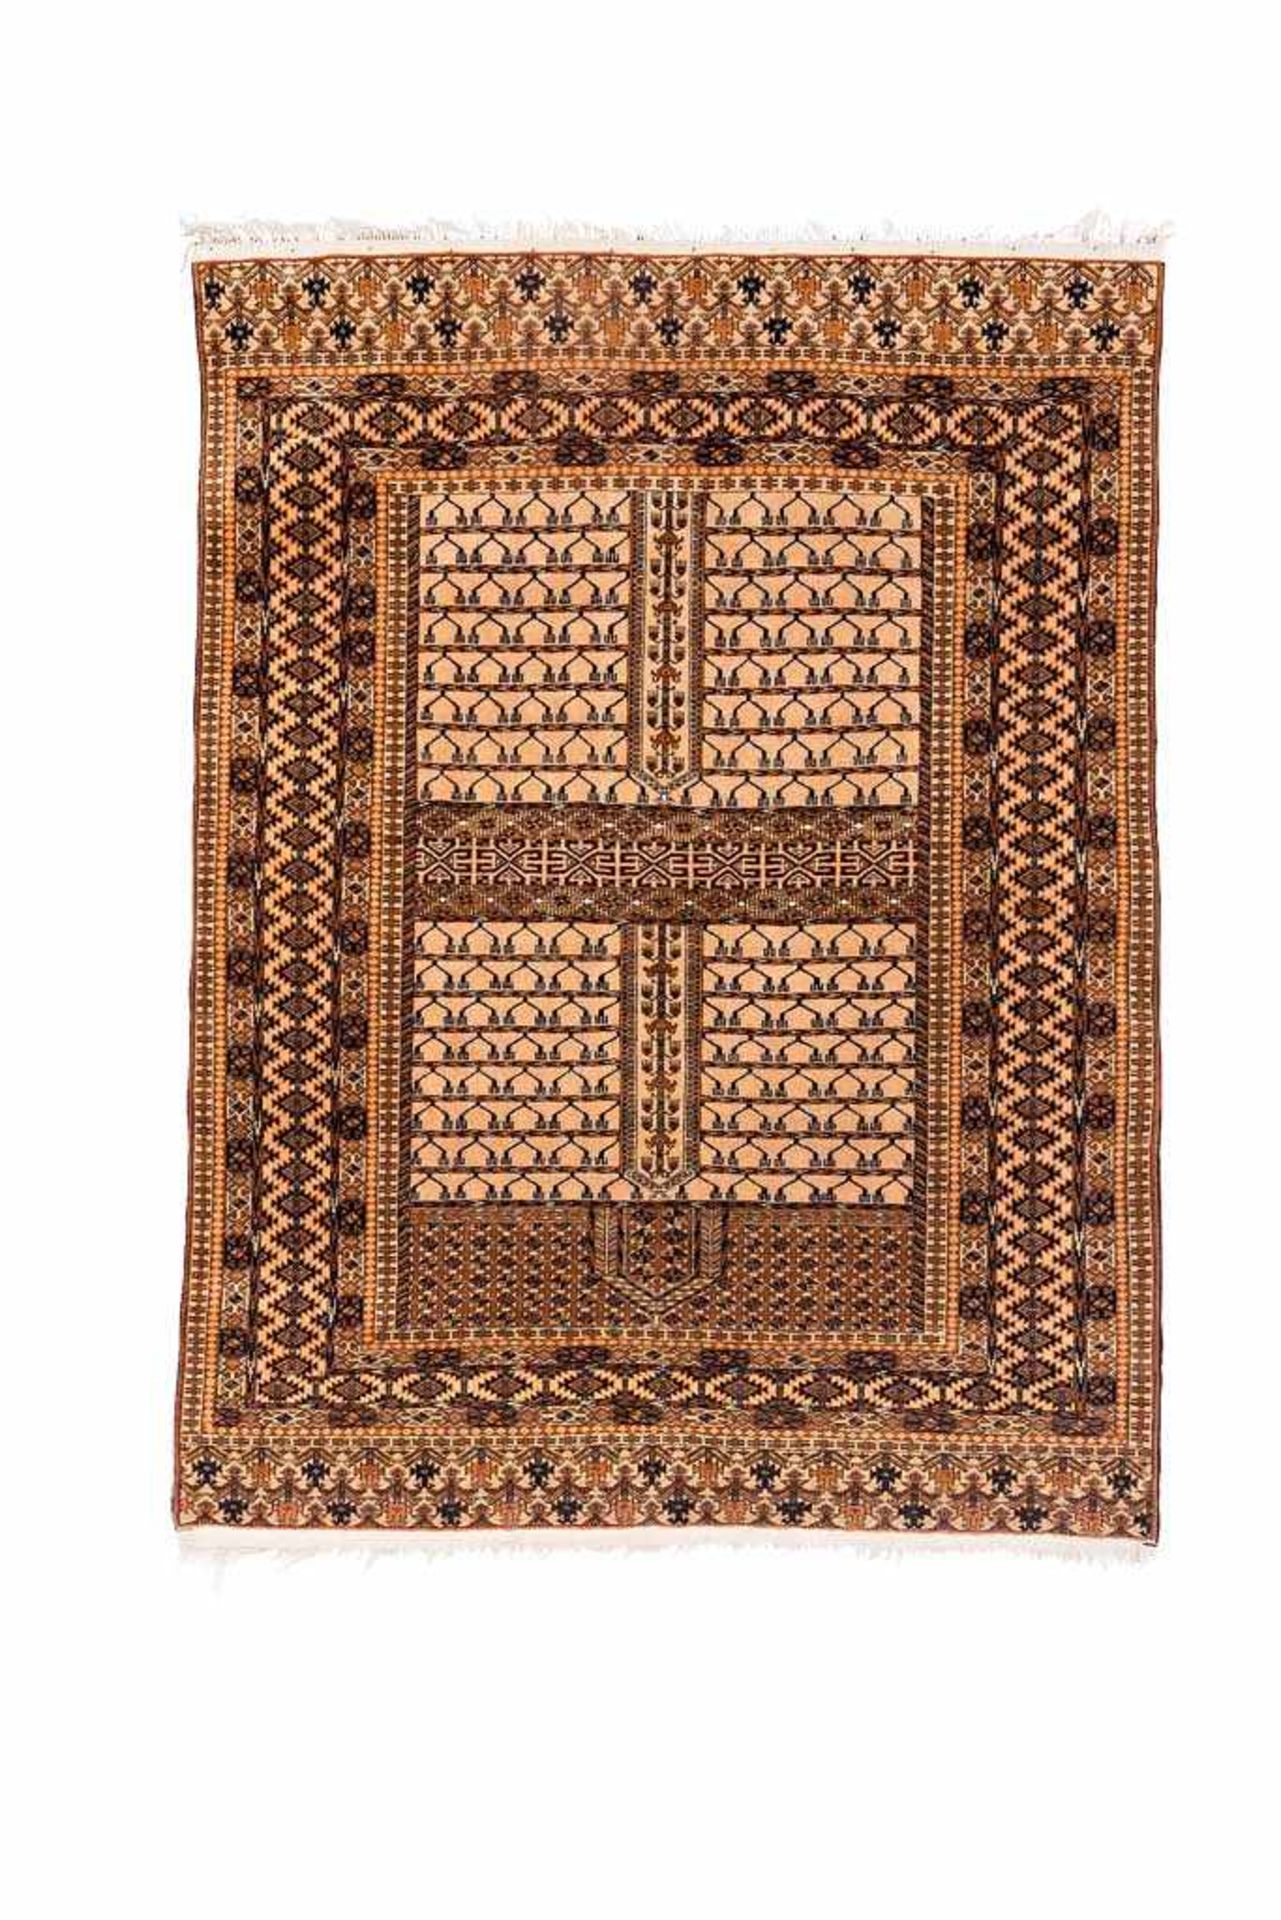 Hatschlu. Korkwolle auf Seide. Afghanistan. 168 x 127 cm